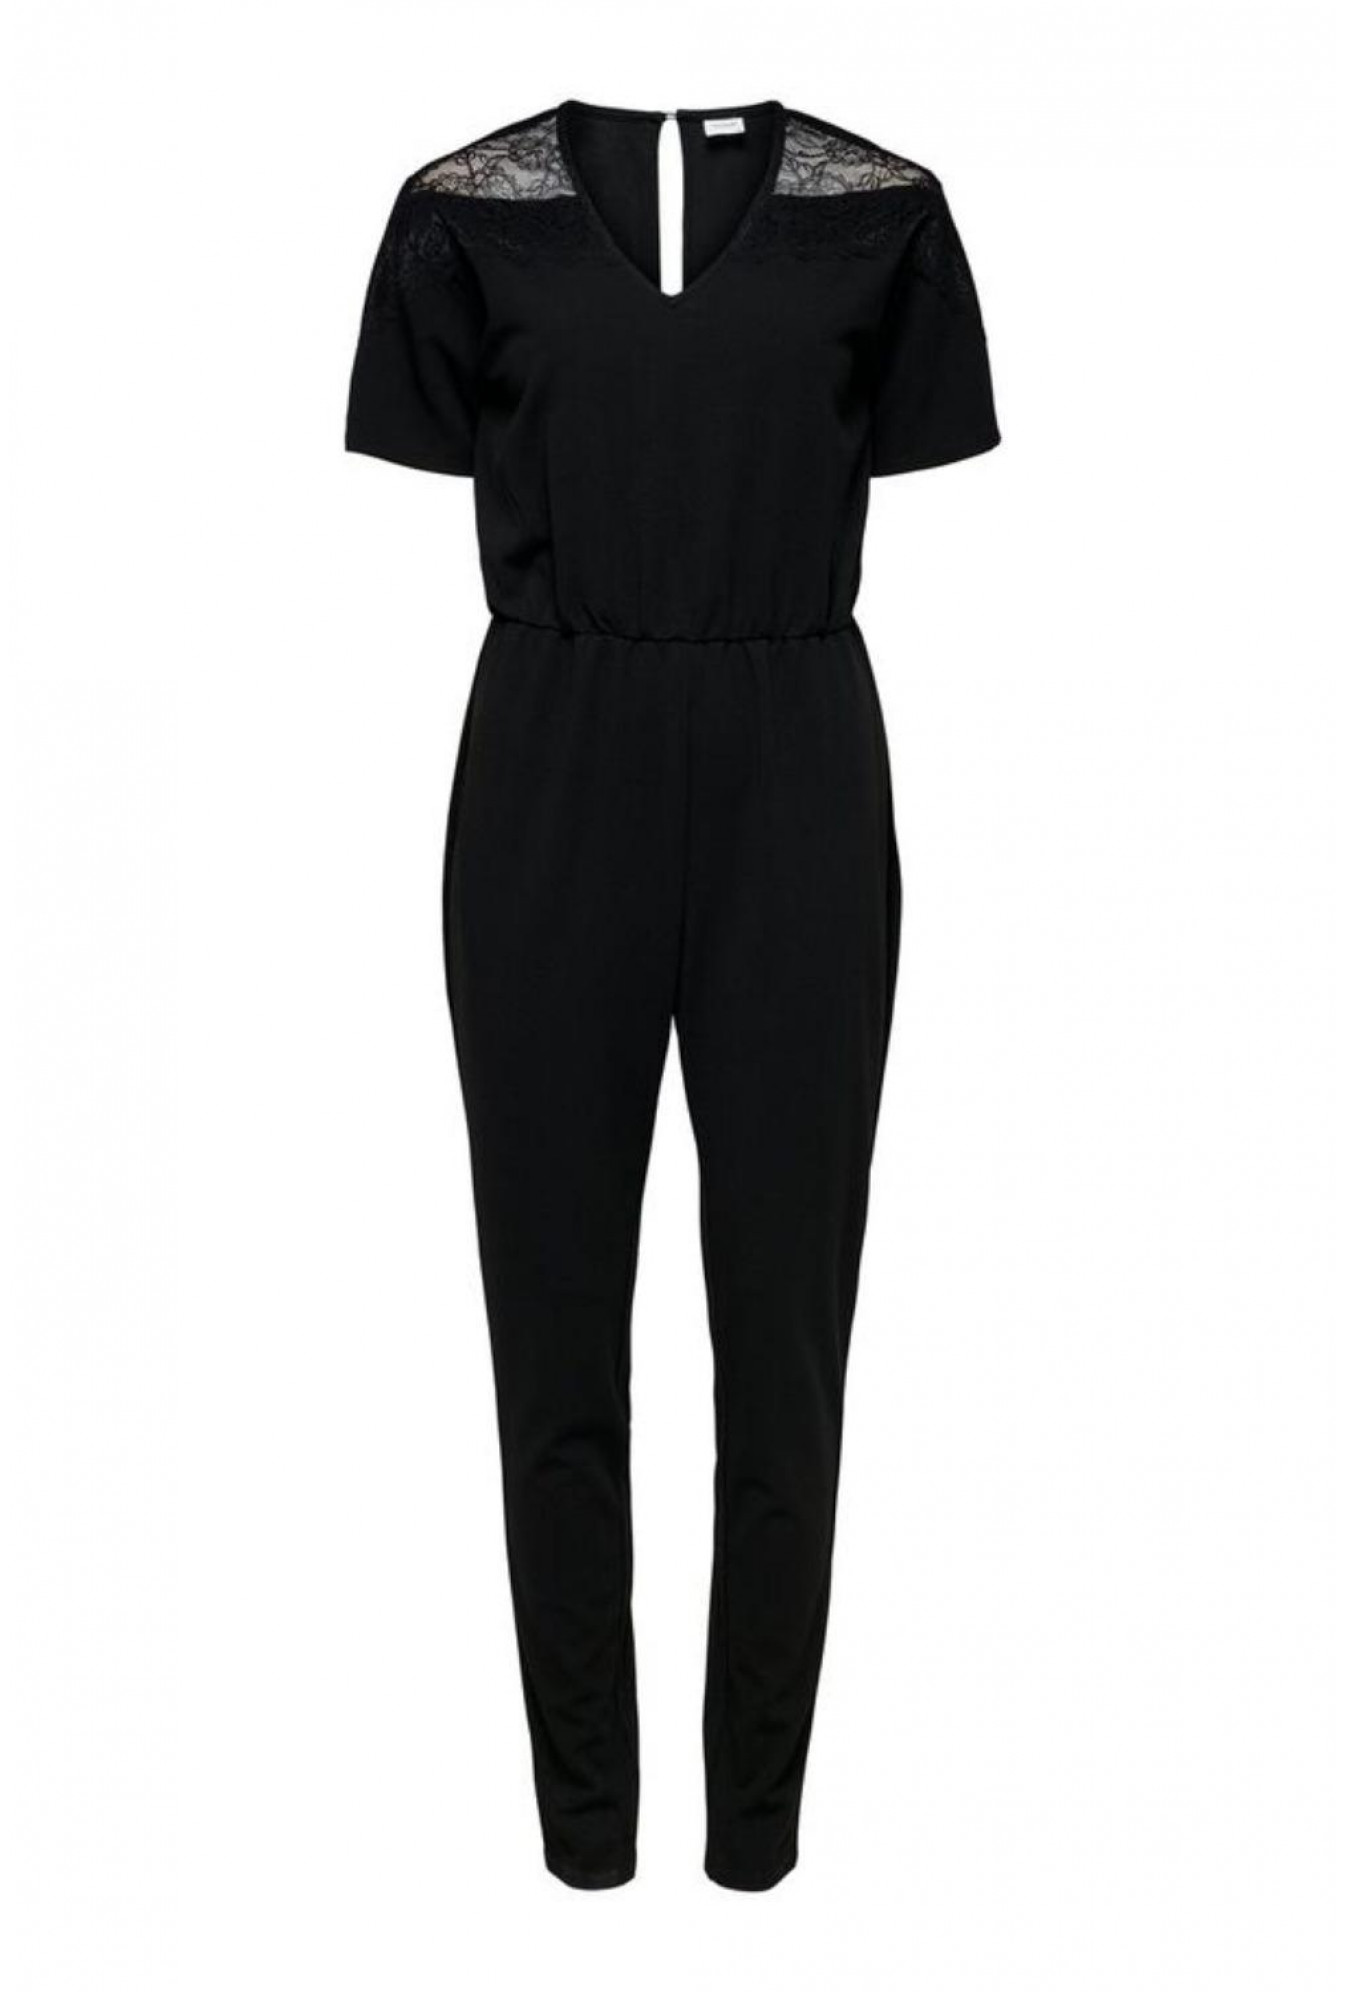 JDY Kappa Short Sleeve Jumpsuit in Black | iCLOTHING